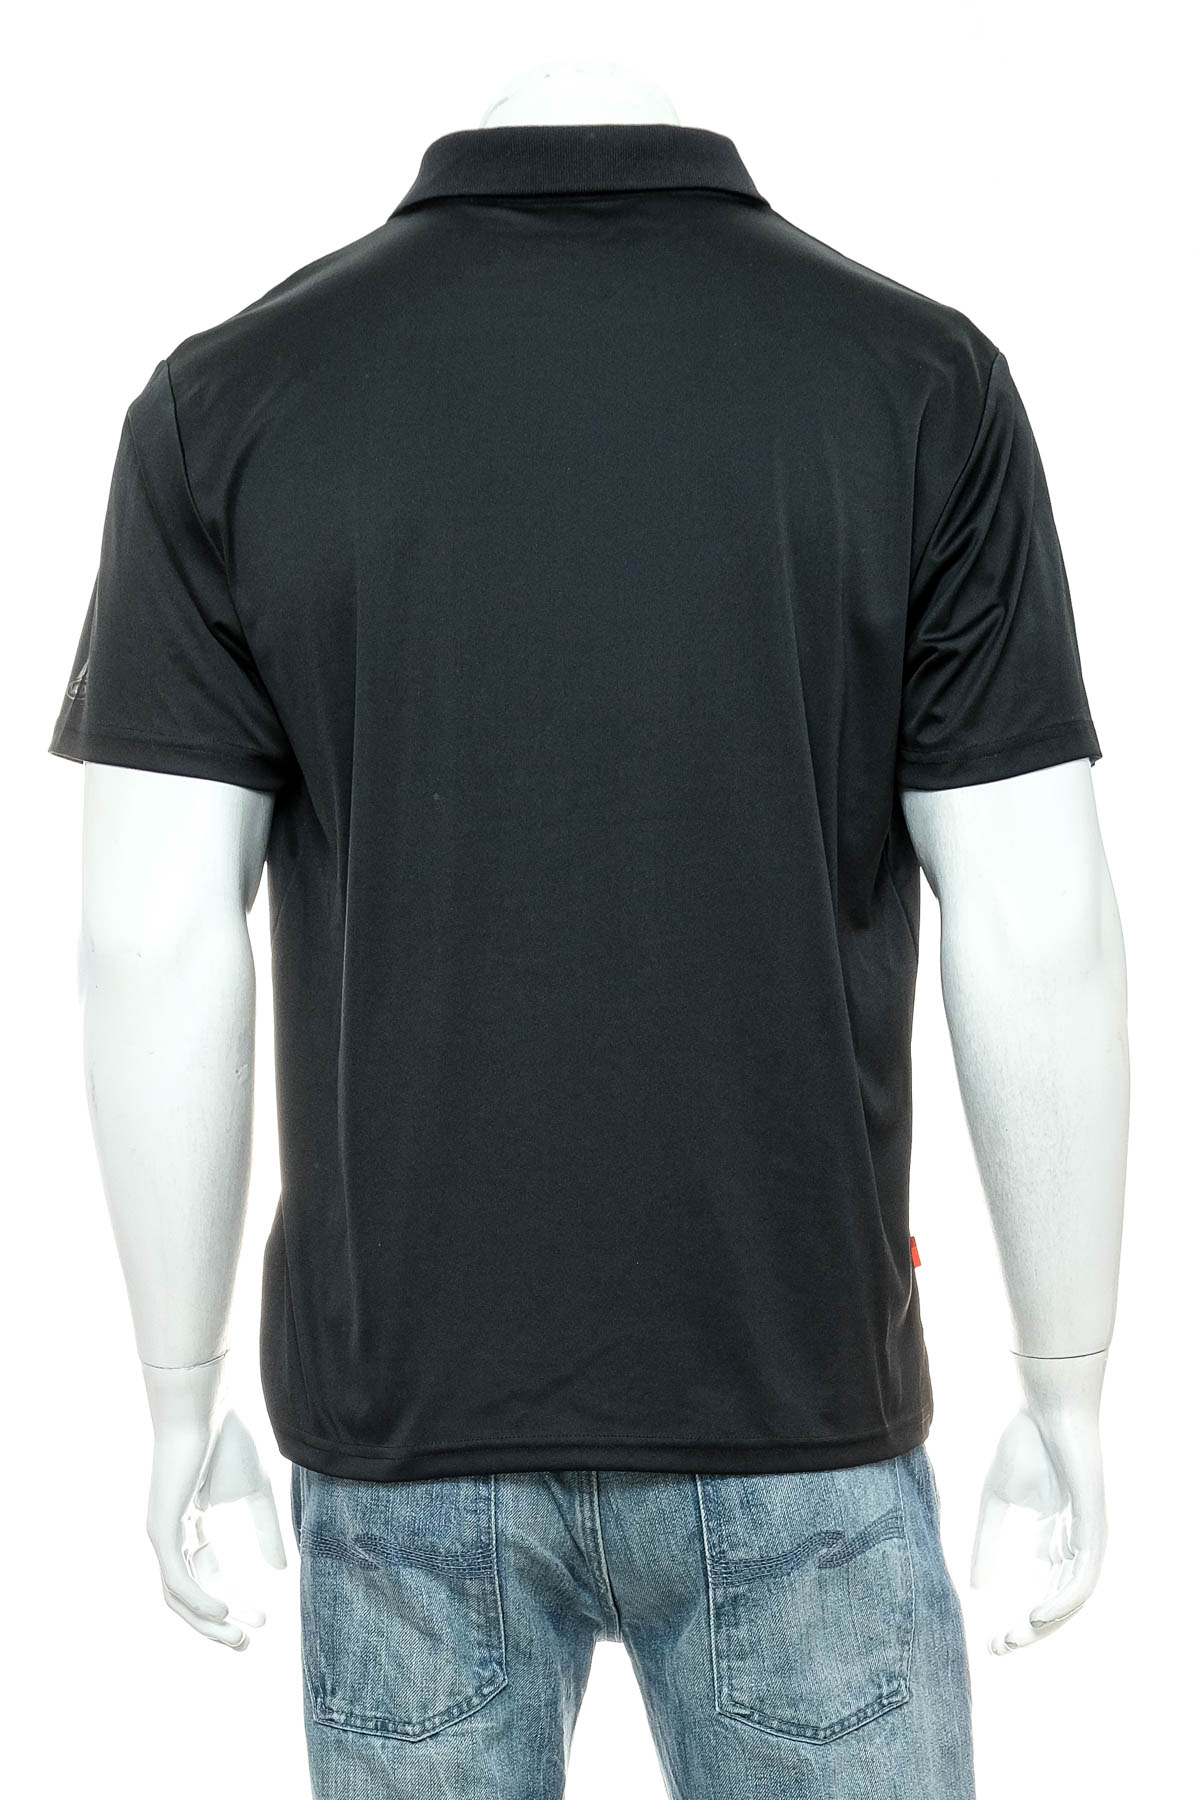 Men's T-shirt - Vaude - 1